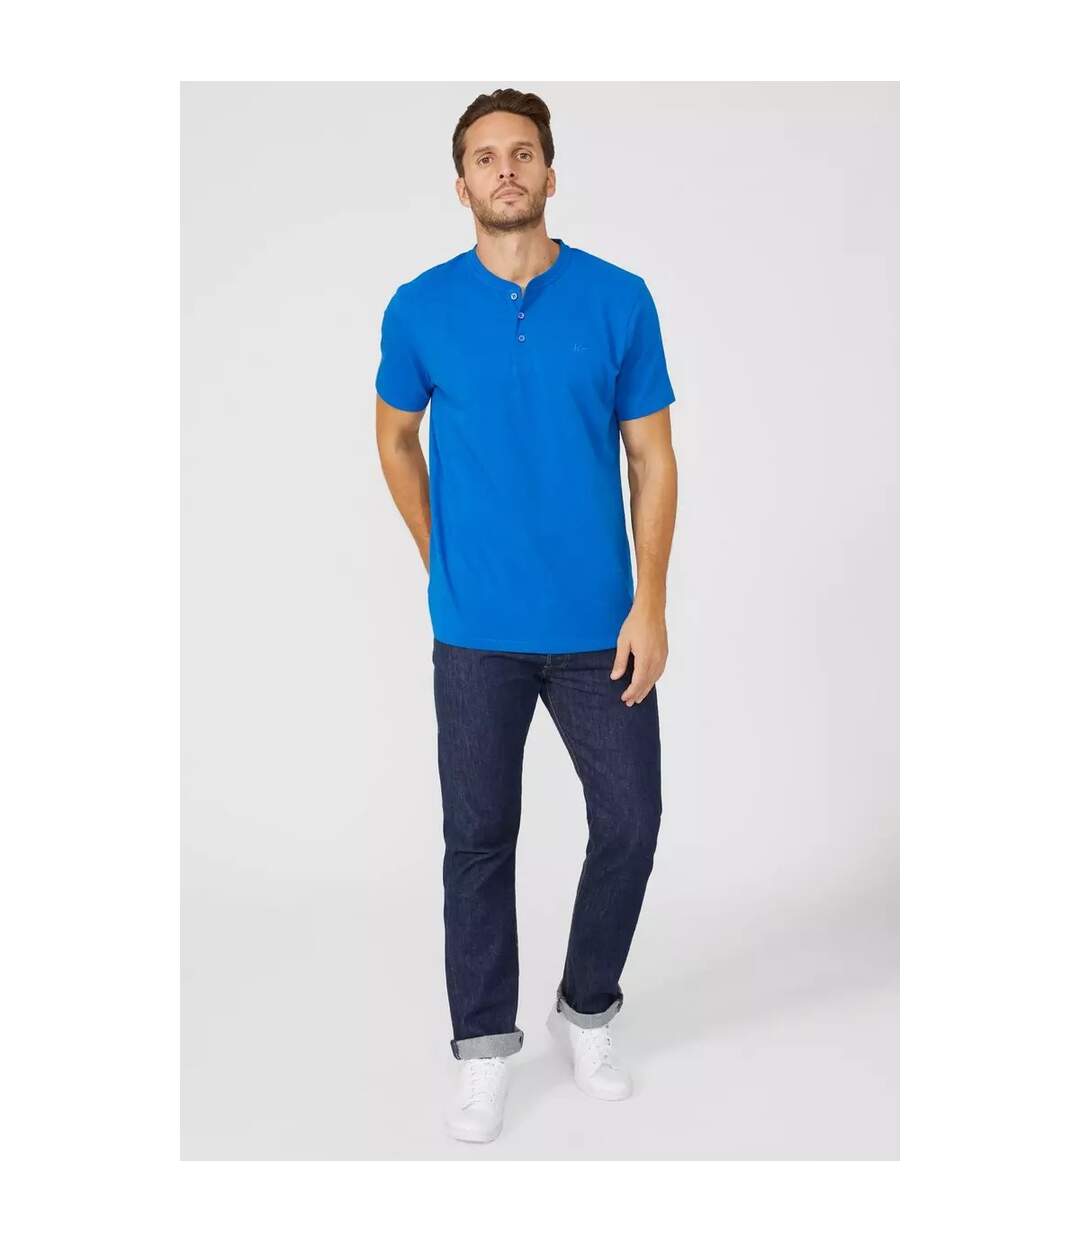 Mantaray - T-shirt - Homme (Bleu cobalt) - UTDH440